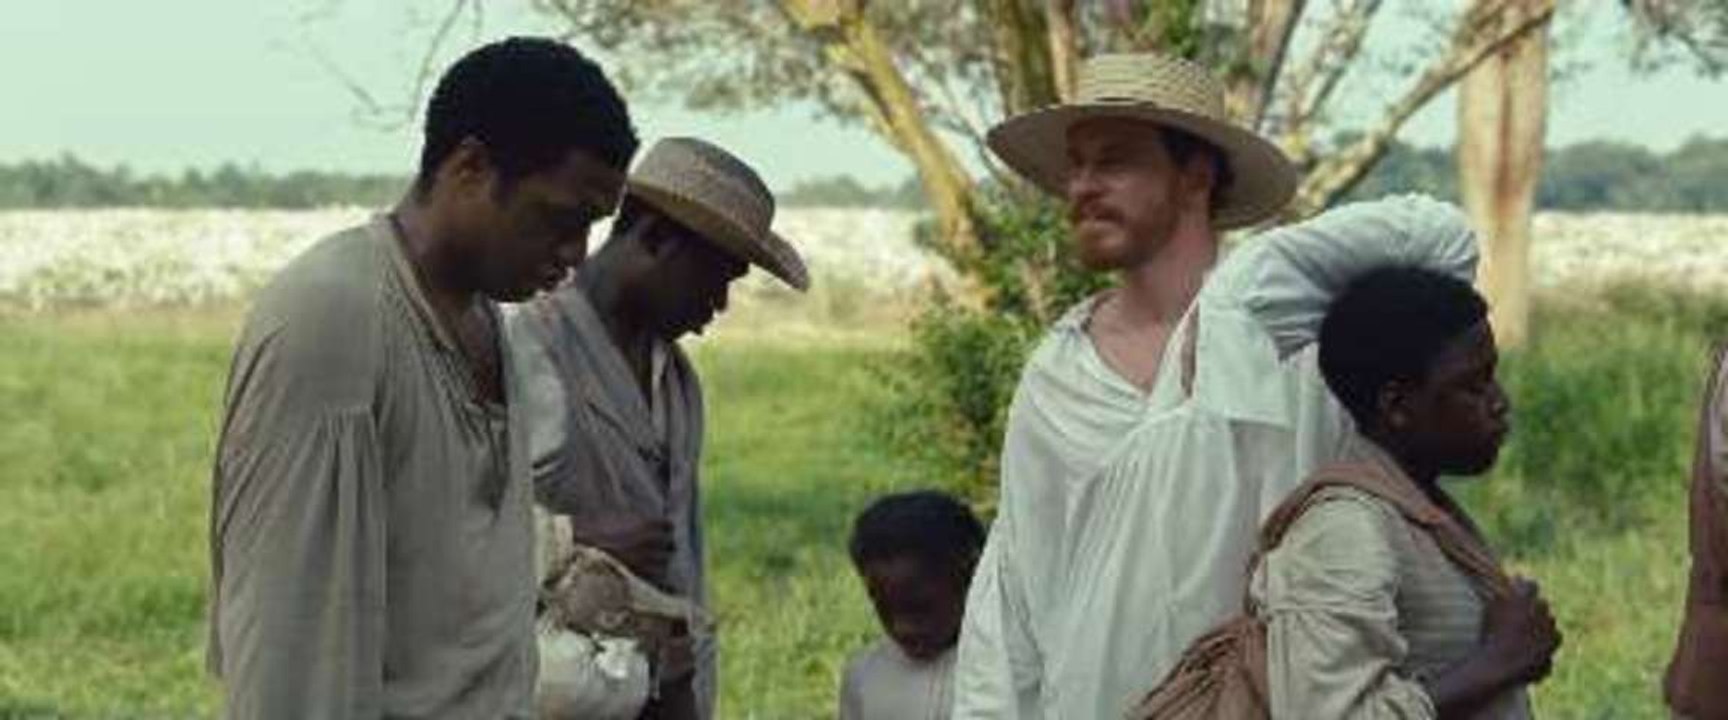 Cumberbatch und McQueen Interview 12 Years a Slave